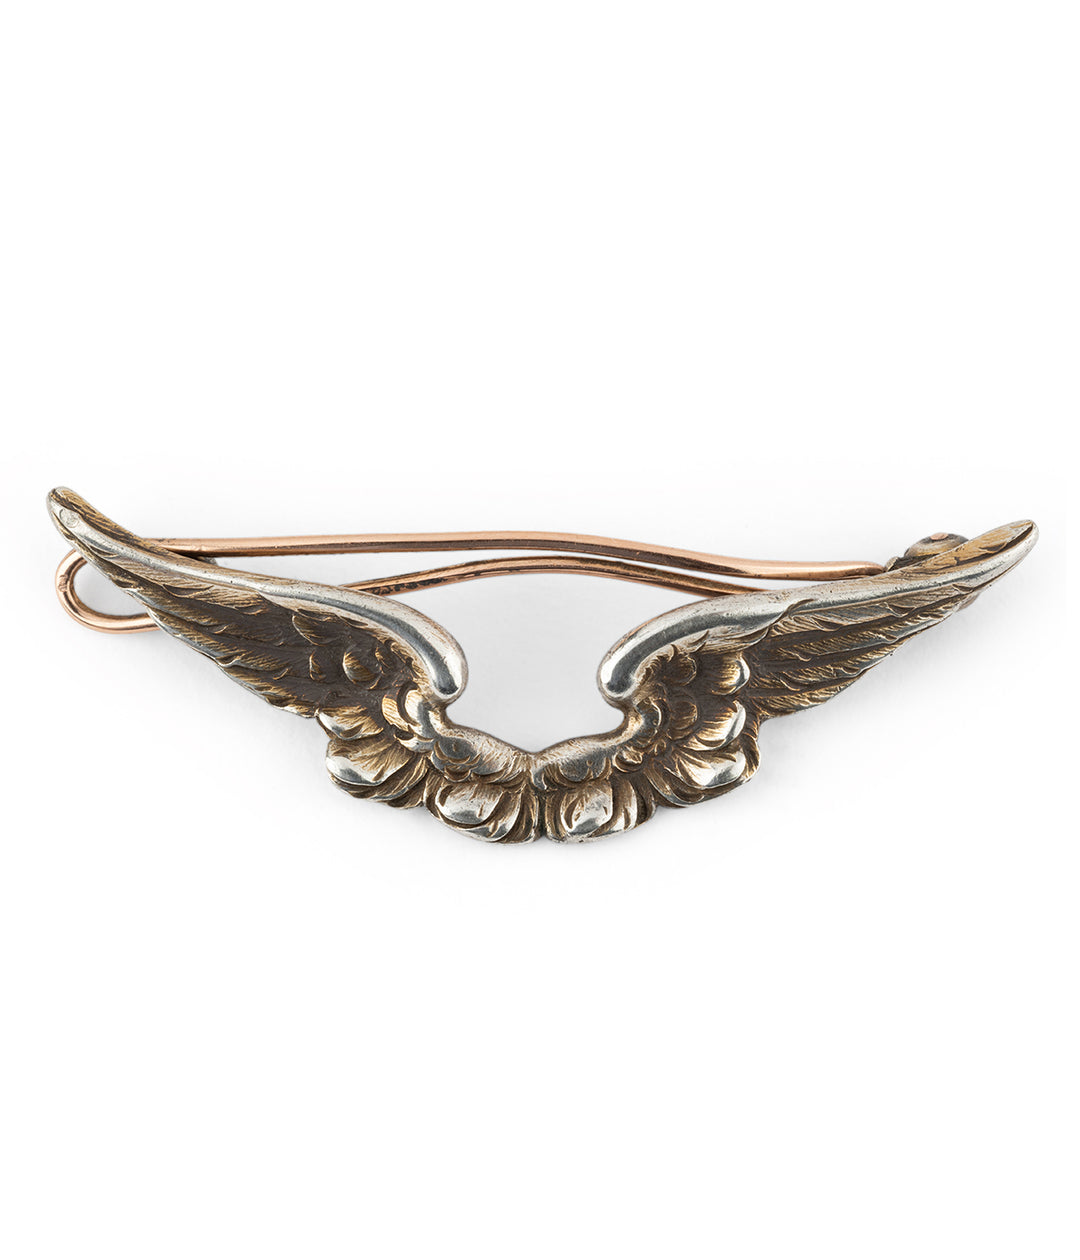 Antique silver wedding hair clip Gocha - Caillou Paris